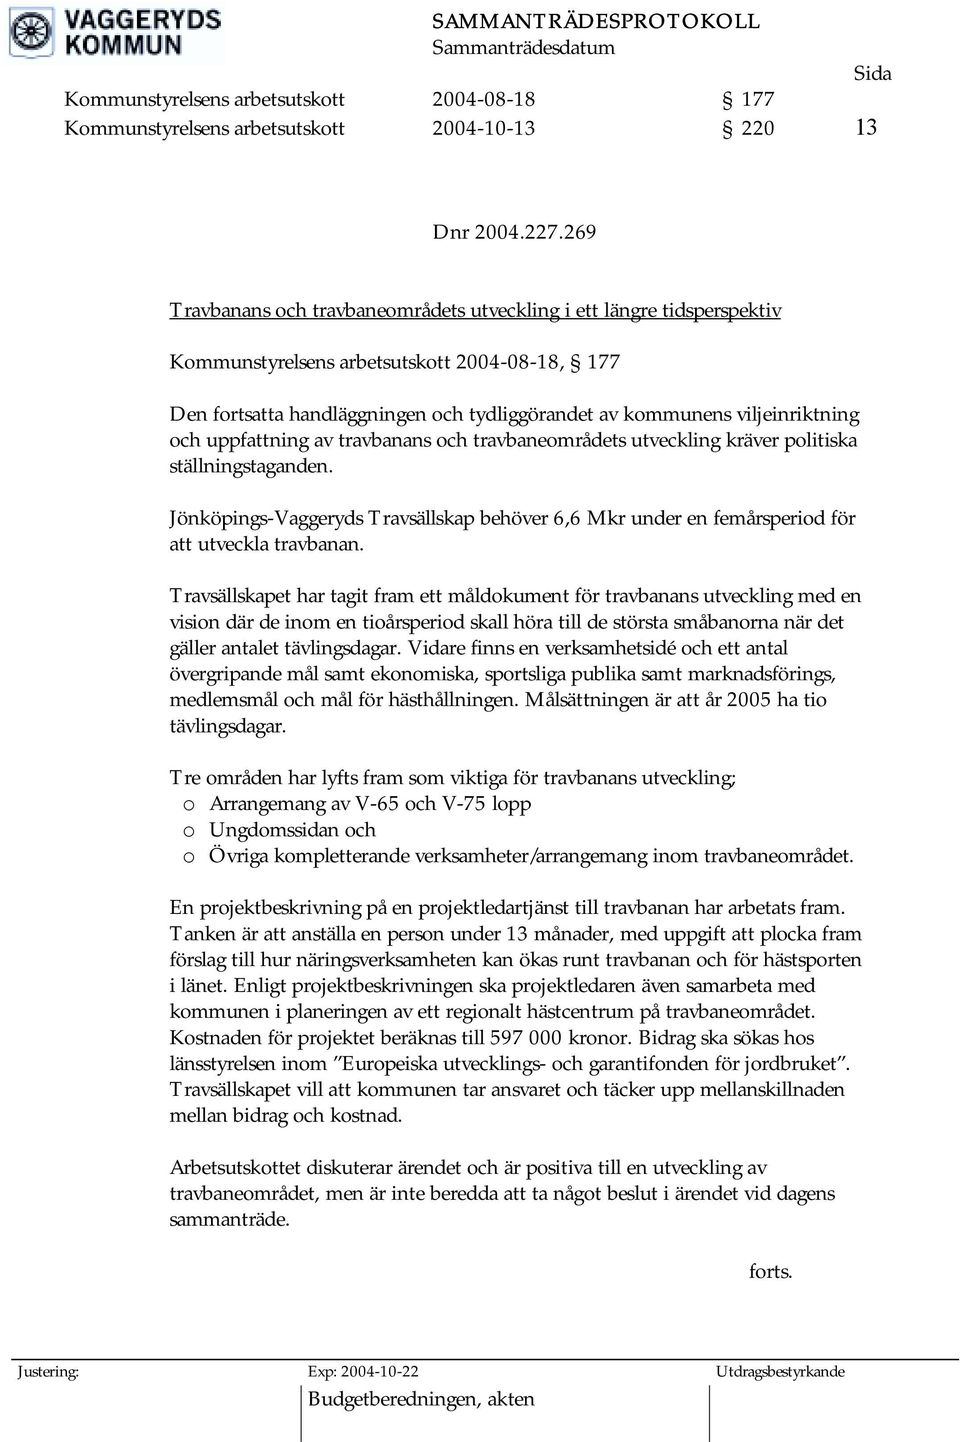 och uppfattning av travbanans och travbaneområdets utveckling kräver politiska ställningstaganden. Jönköpings-Vaggeryds Travsällskap behöver 6,6 Mkr under en femårsperiod för att utveckla travbanan.